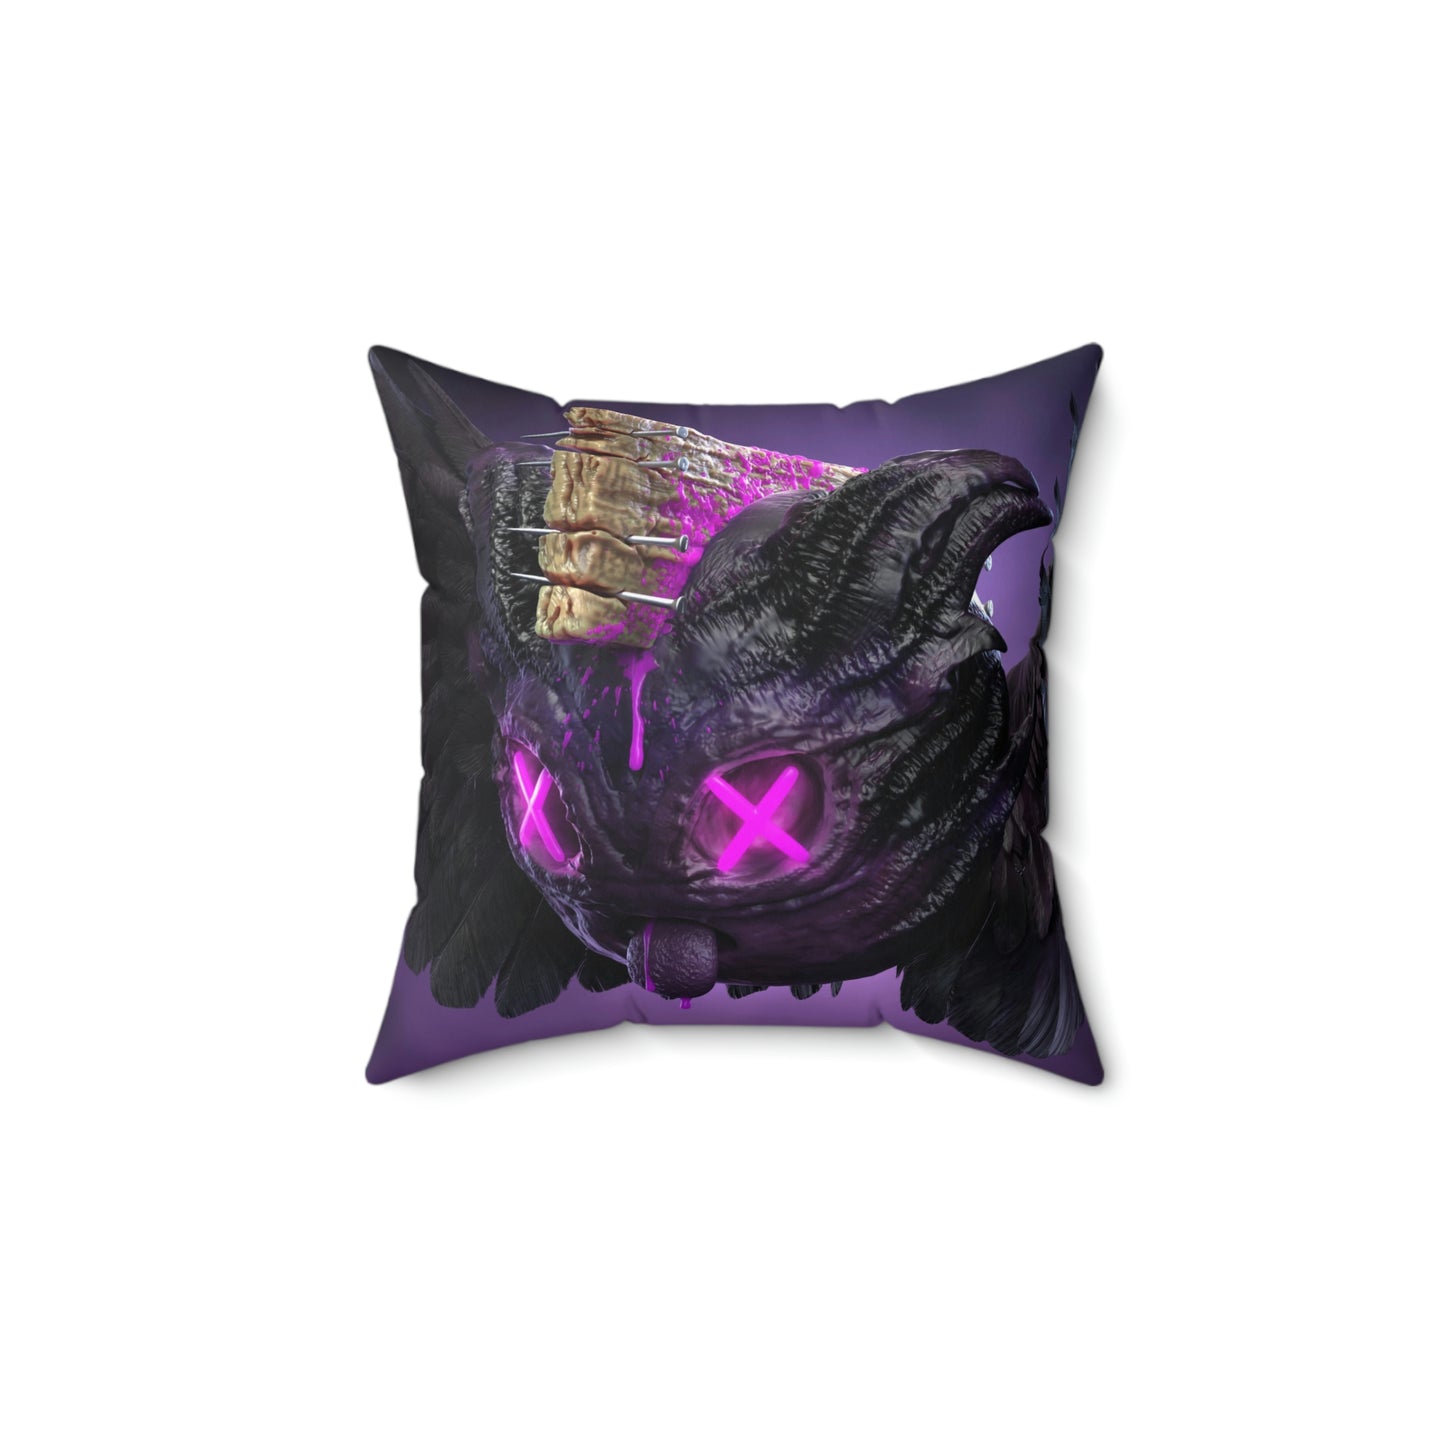 PurpleDemon Legendary Holder Spun Polyester Square Pillow